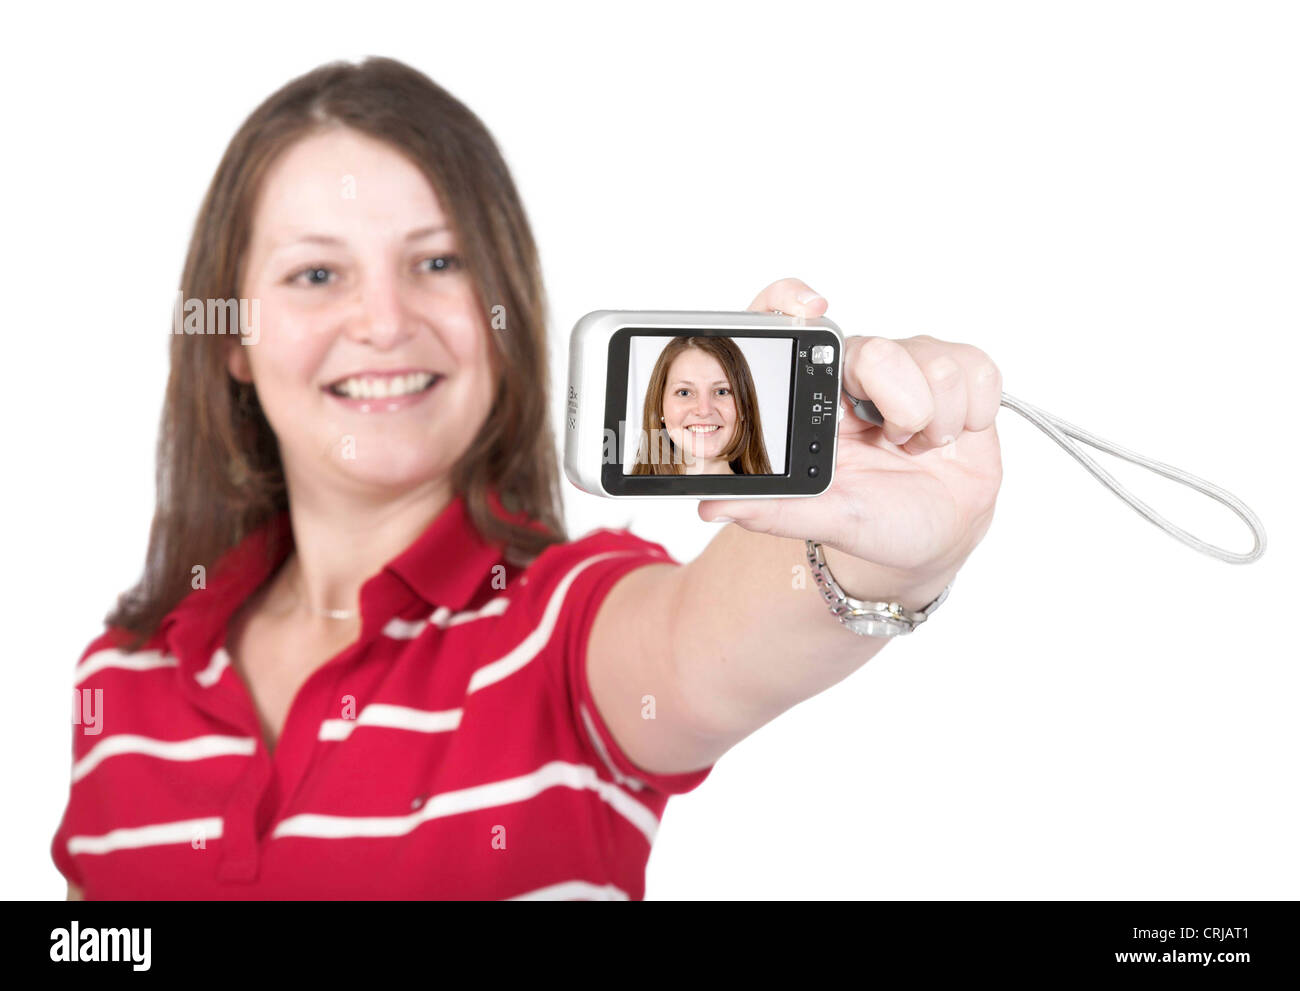 Junges Maedchen praesentiert Selbstportraet auf dem Mostrar ihrer Digitalkamera Foto de stock